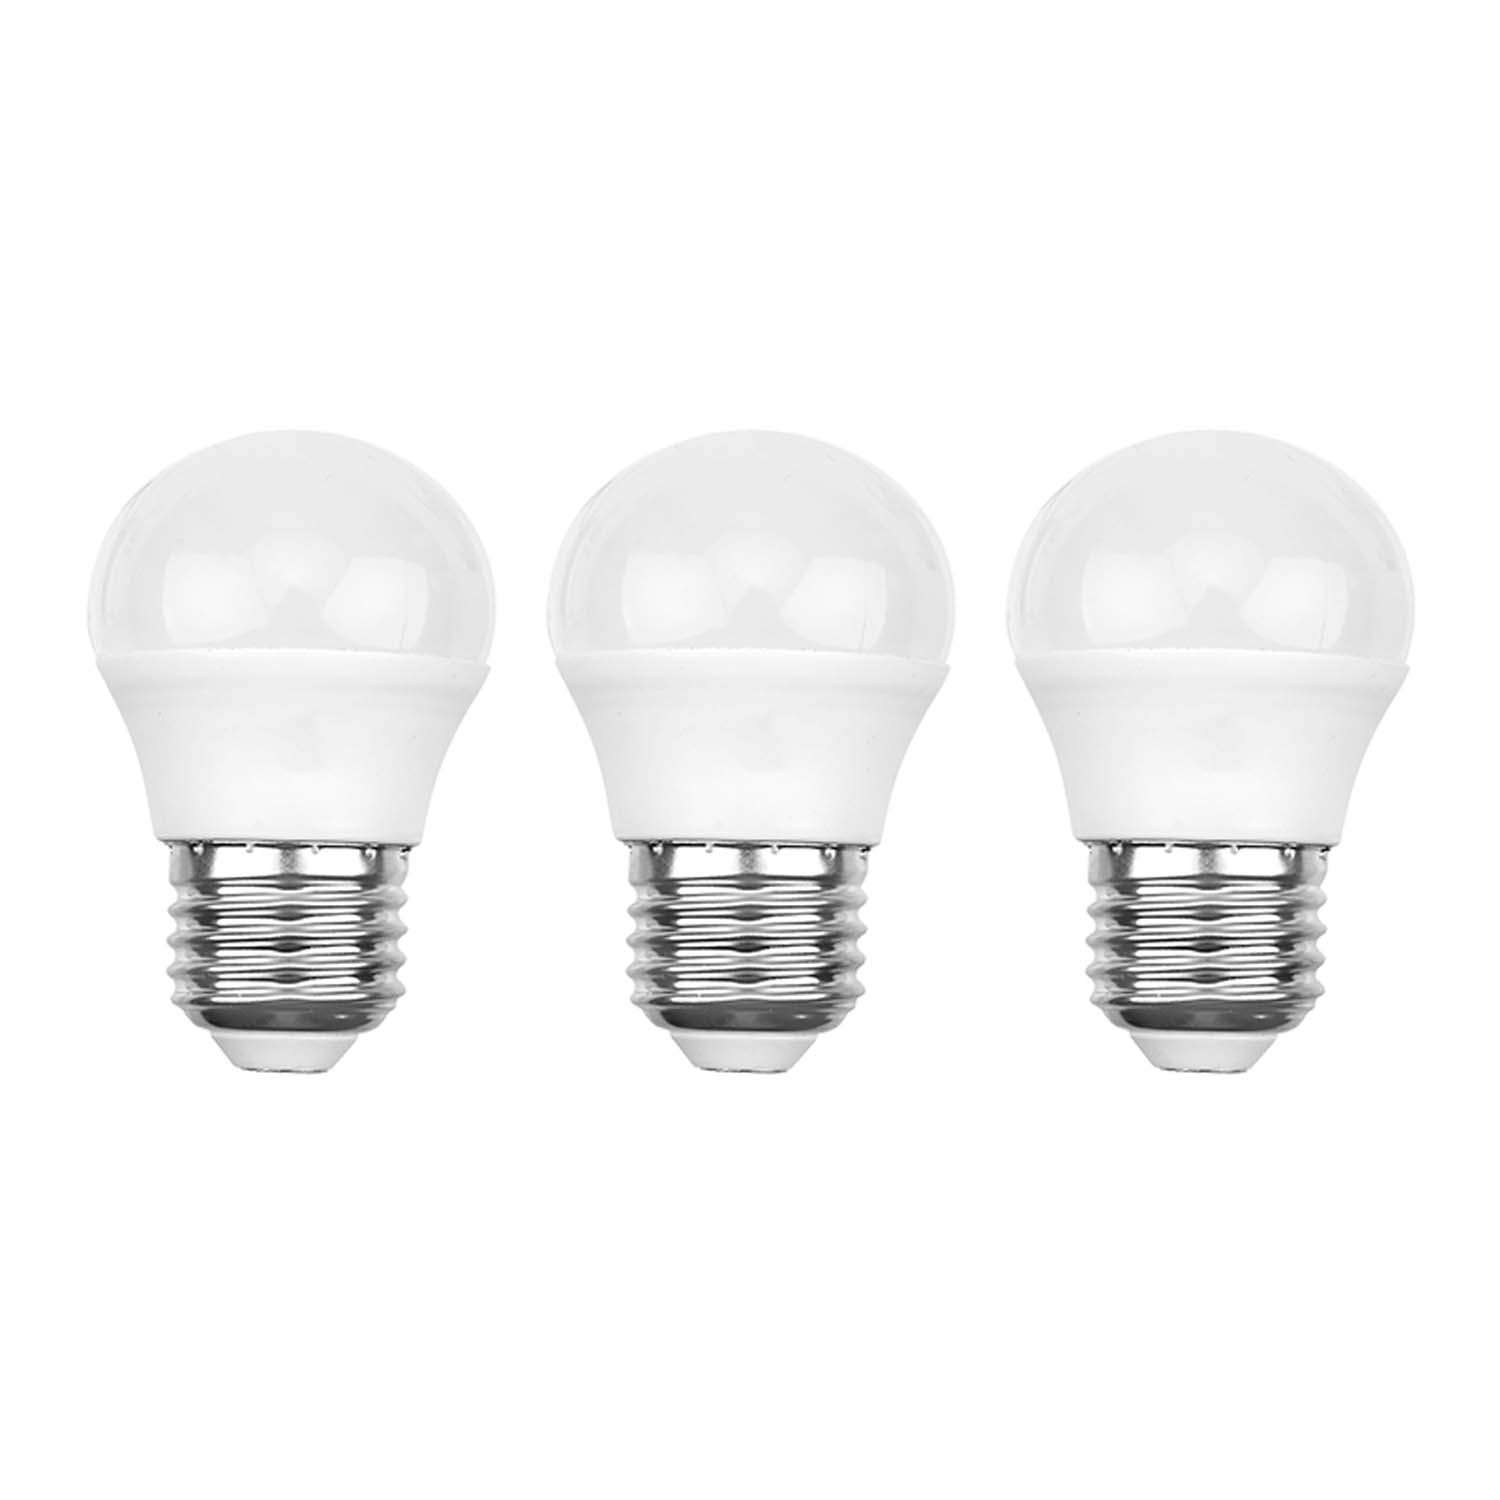 Лампа REXANT светодиодная Шарик GL 9.5Вт E27 903Лм 6500K холодный свет 3 штуки - фото 1